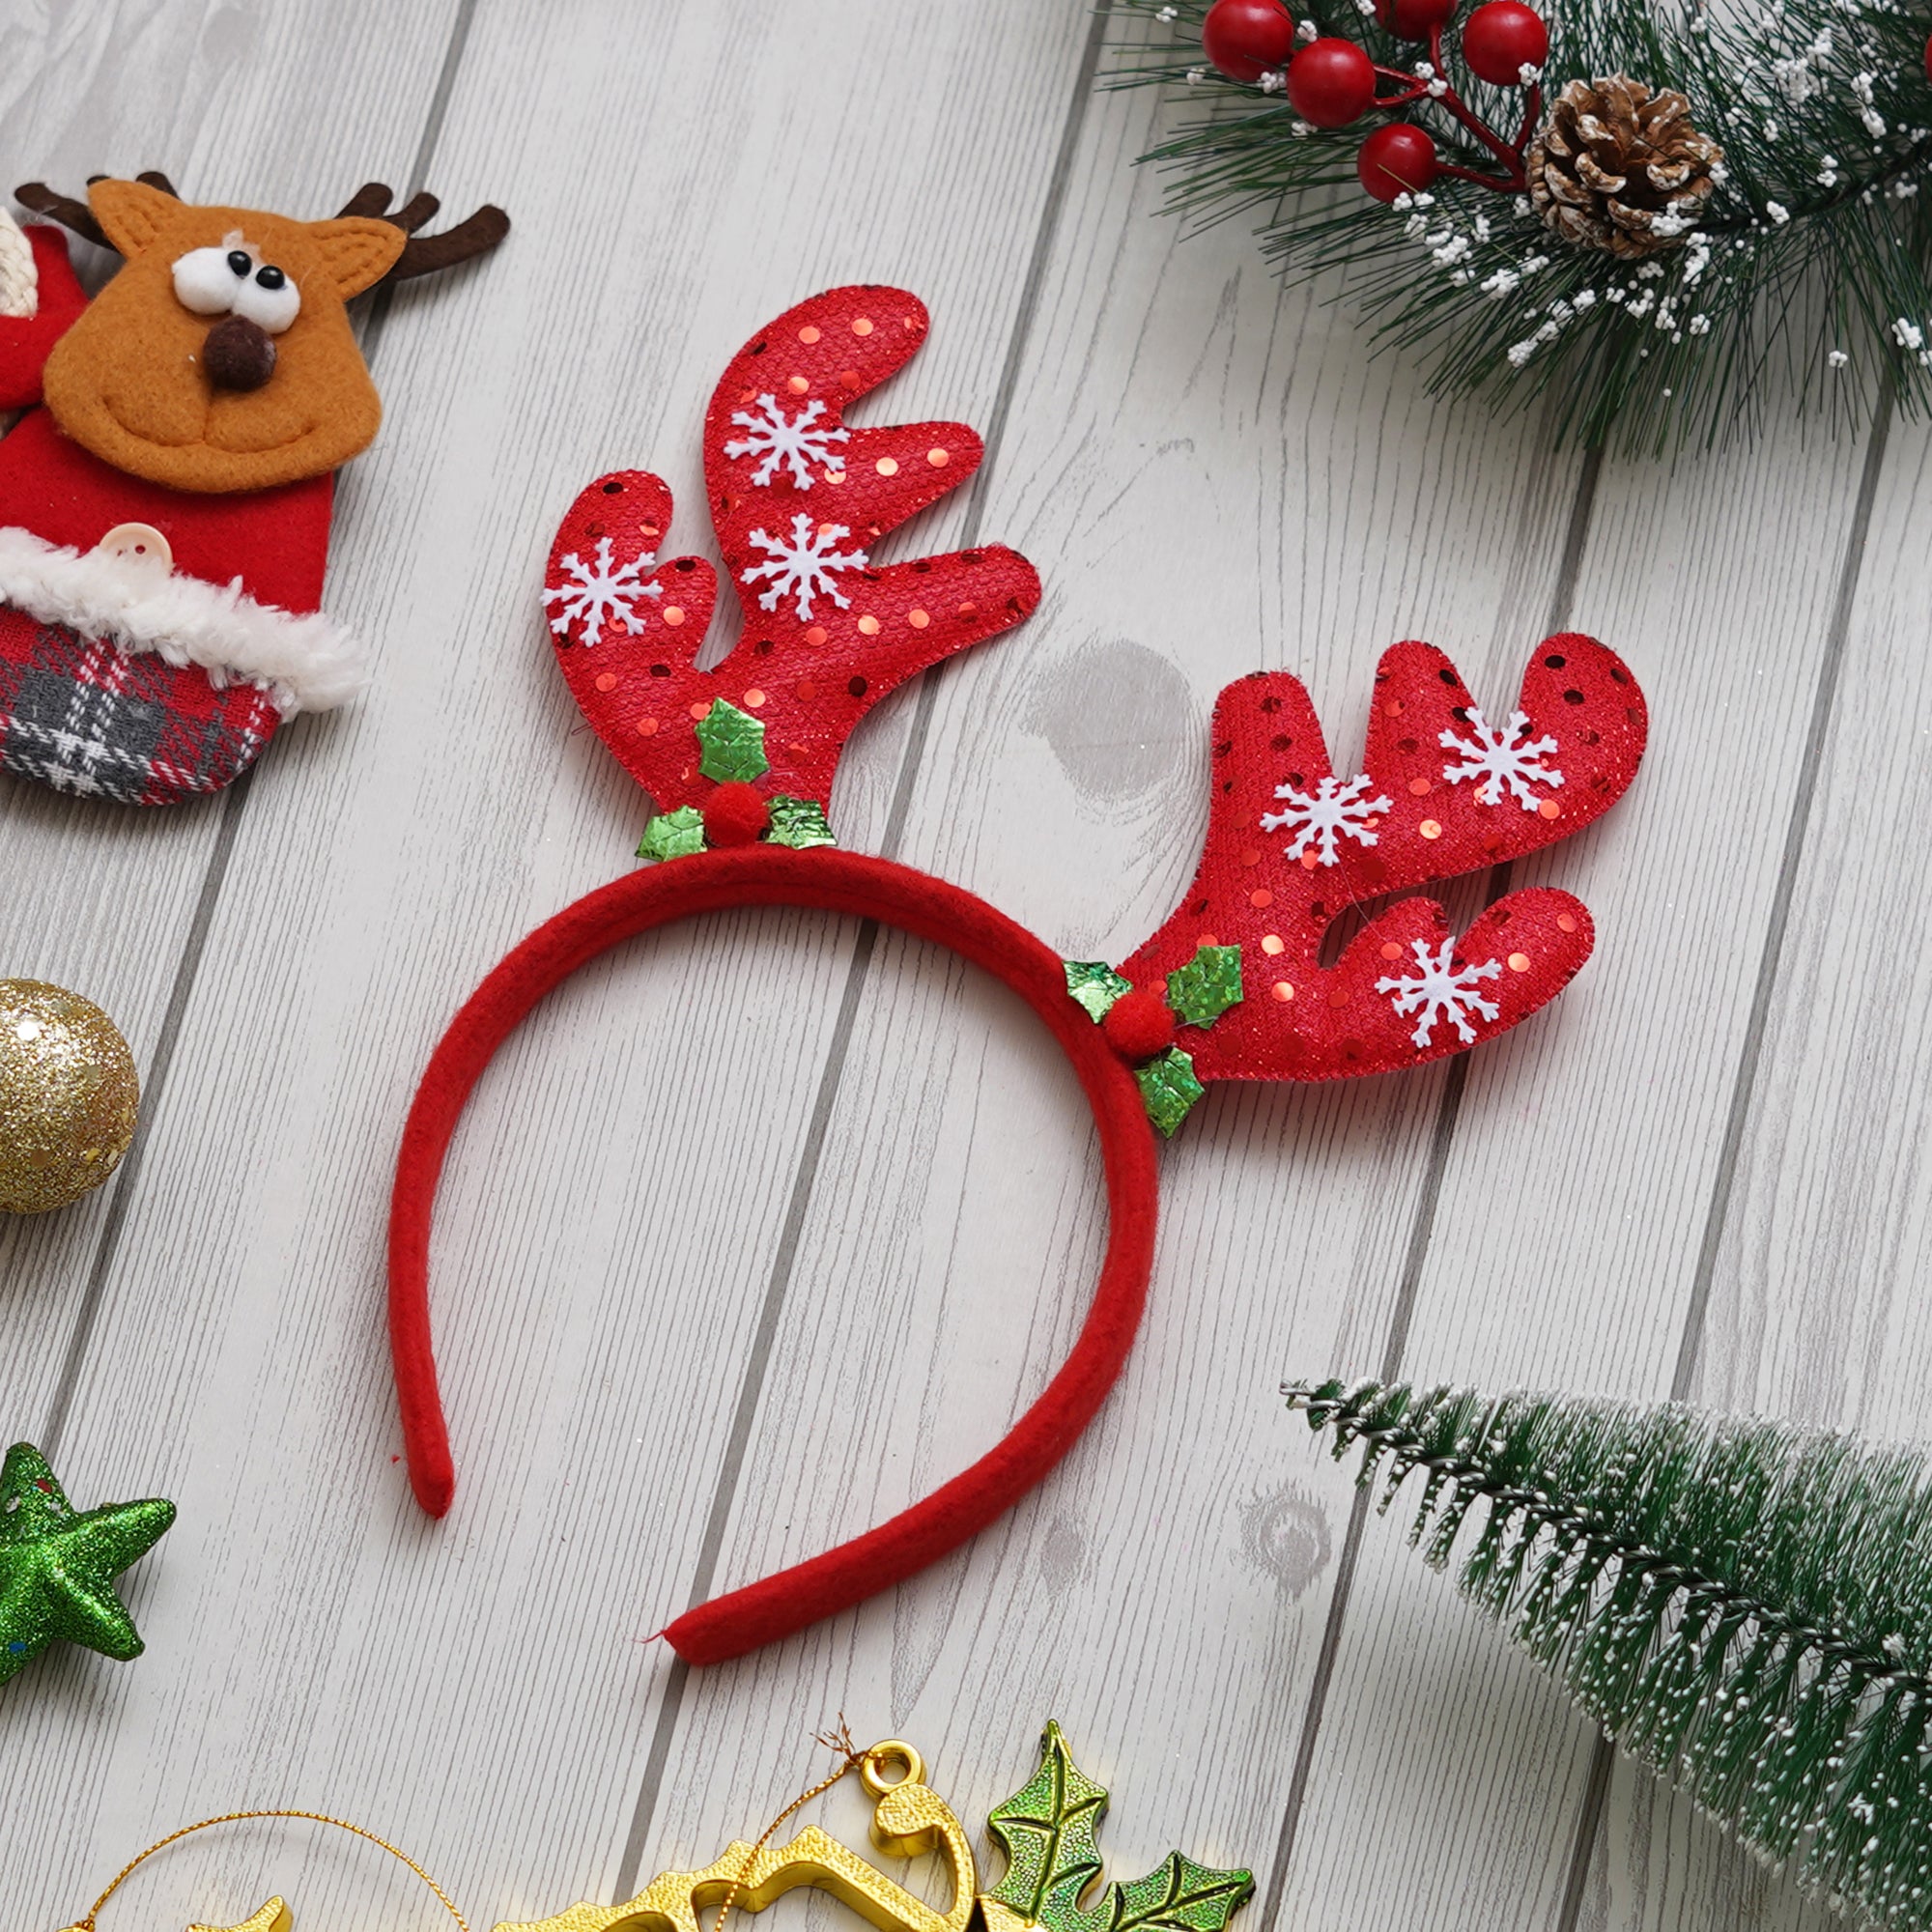 eCraftIndia Christmas Glitter Reindeer Antlers Headband  Deer Horn Hairband for Birthday, Christmas Party  Gift for Children, Girls